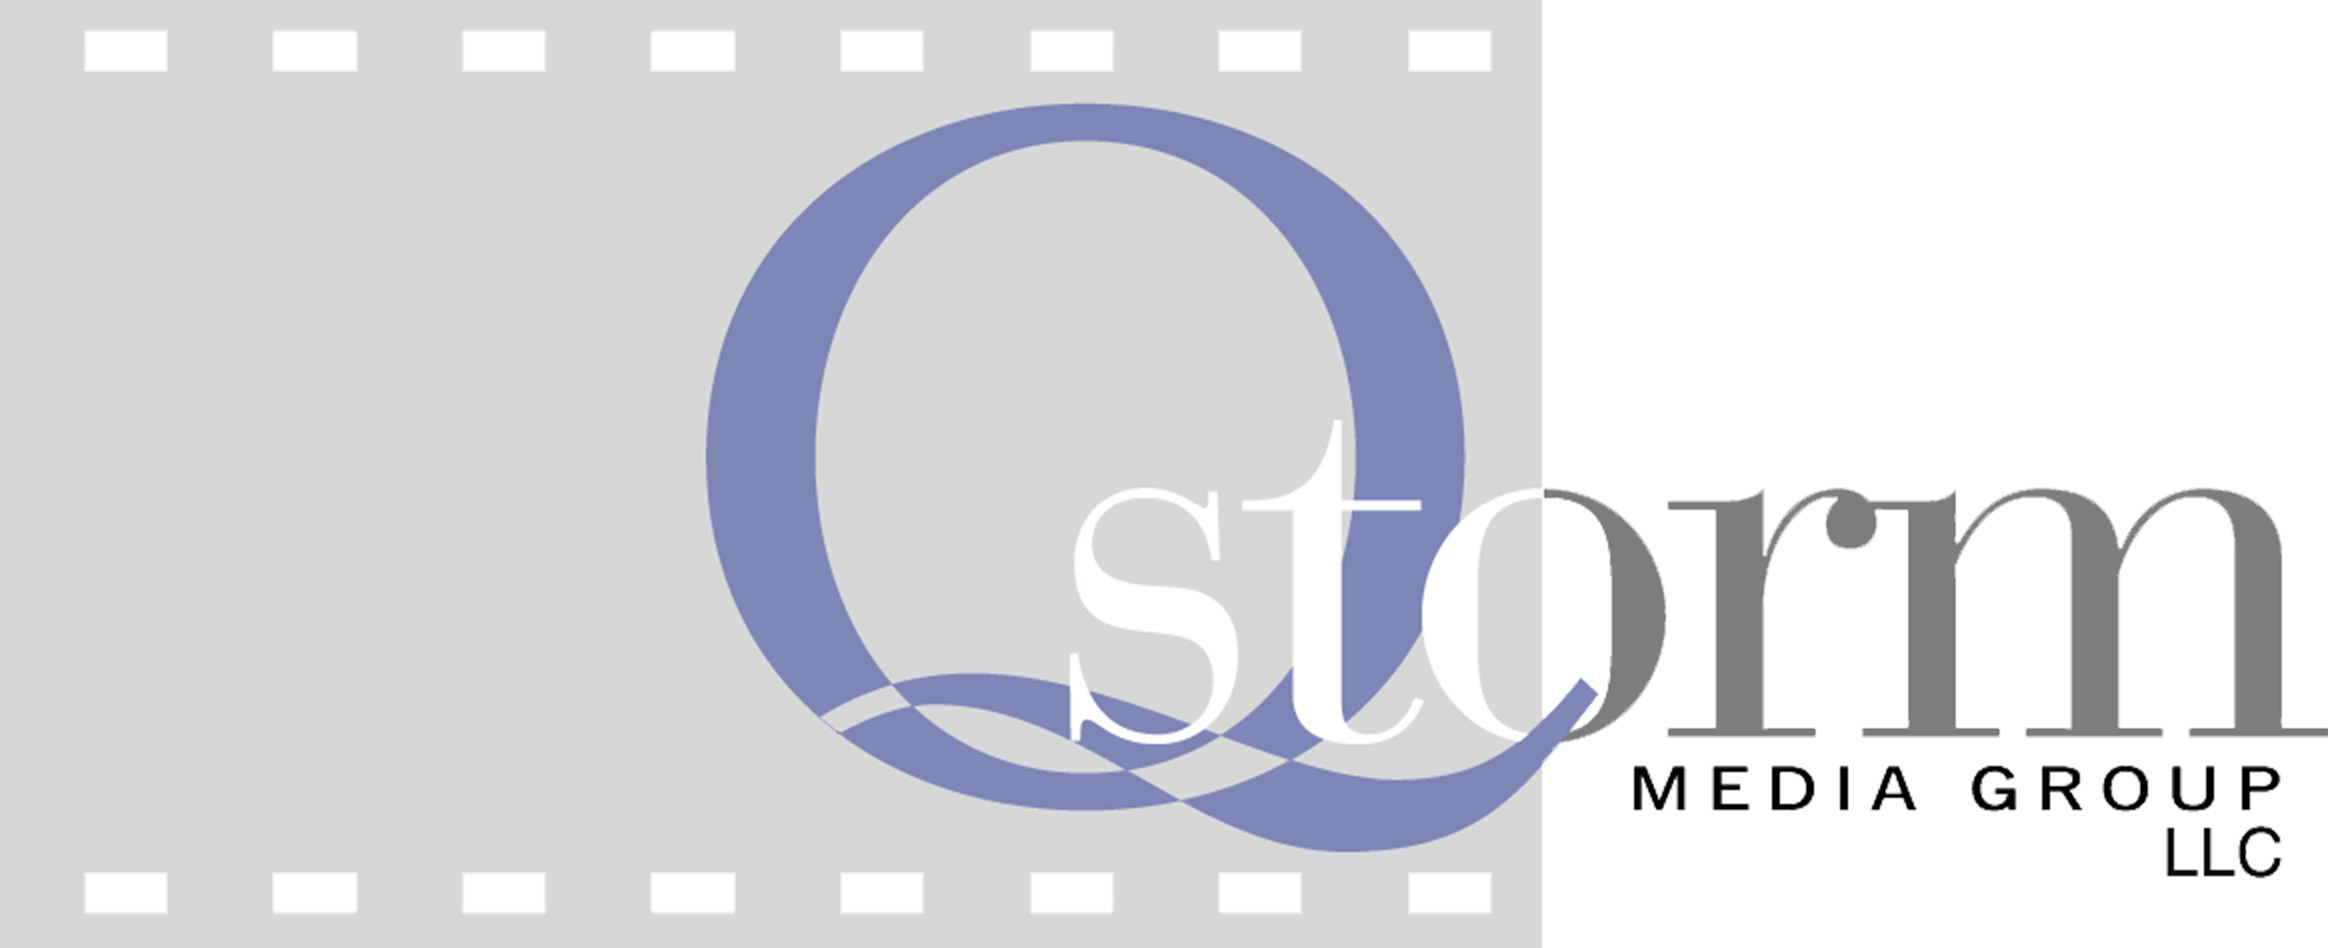 Q Storm Media - Circle Clipart (2328x948), Png Download